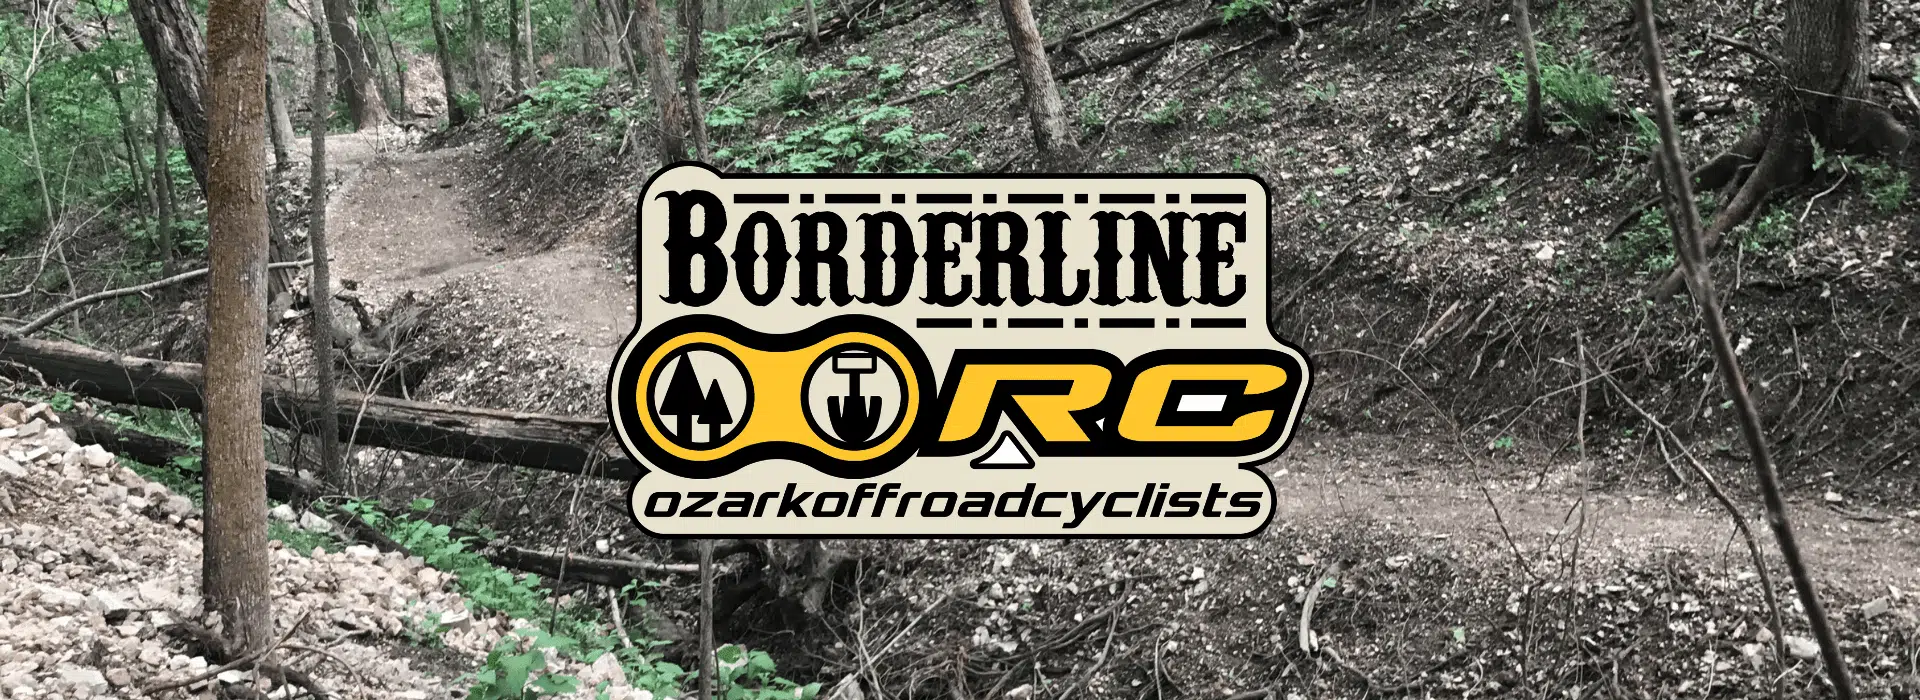 Borderline - Ozark Off Road Cyclist